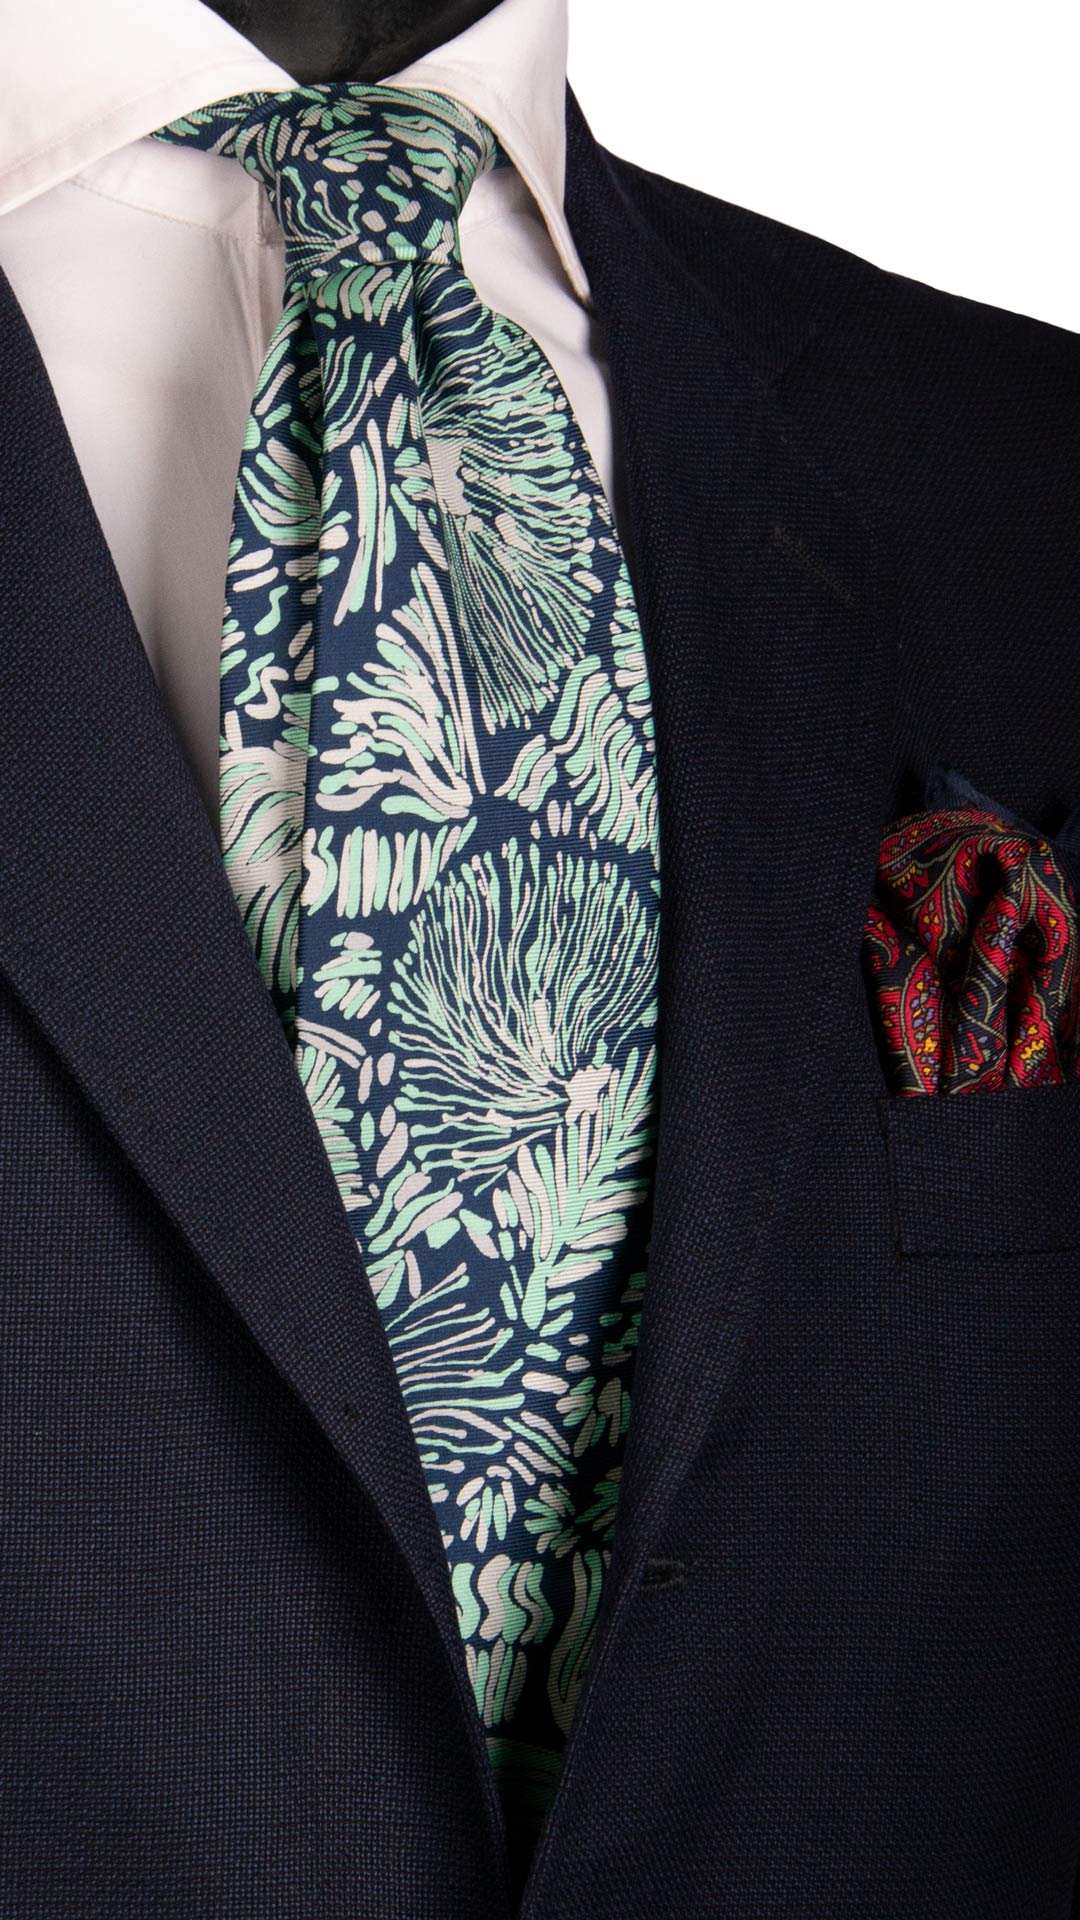 Cravatta Vintage in Saia di Seta Blu Fantasia Verde Tiffany Grigio Argento Made in Italy Graffeo Cravatte